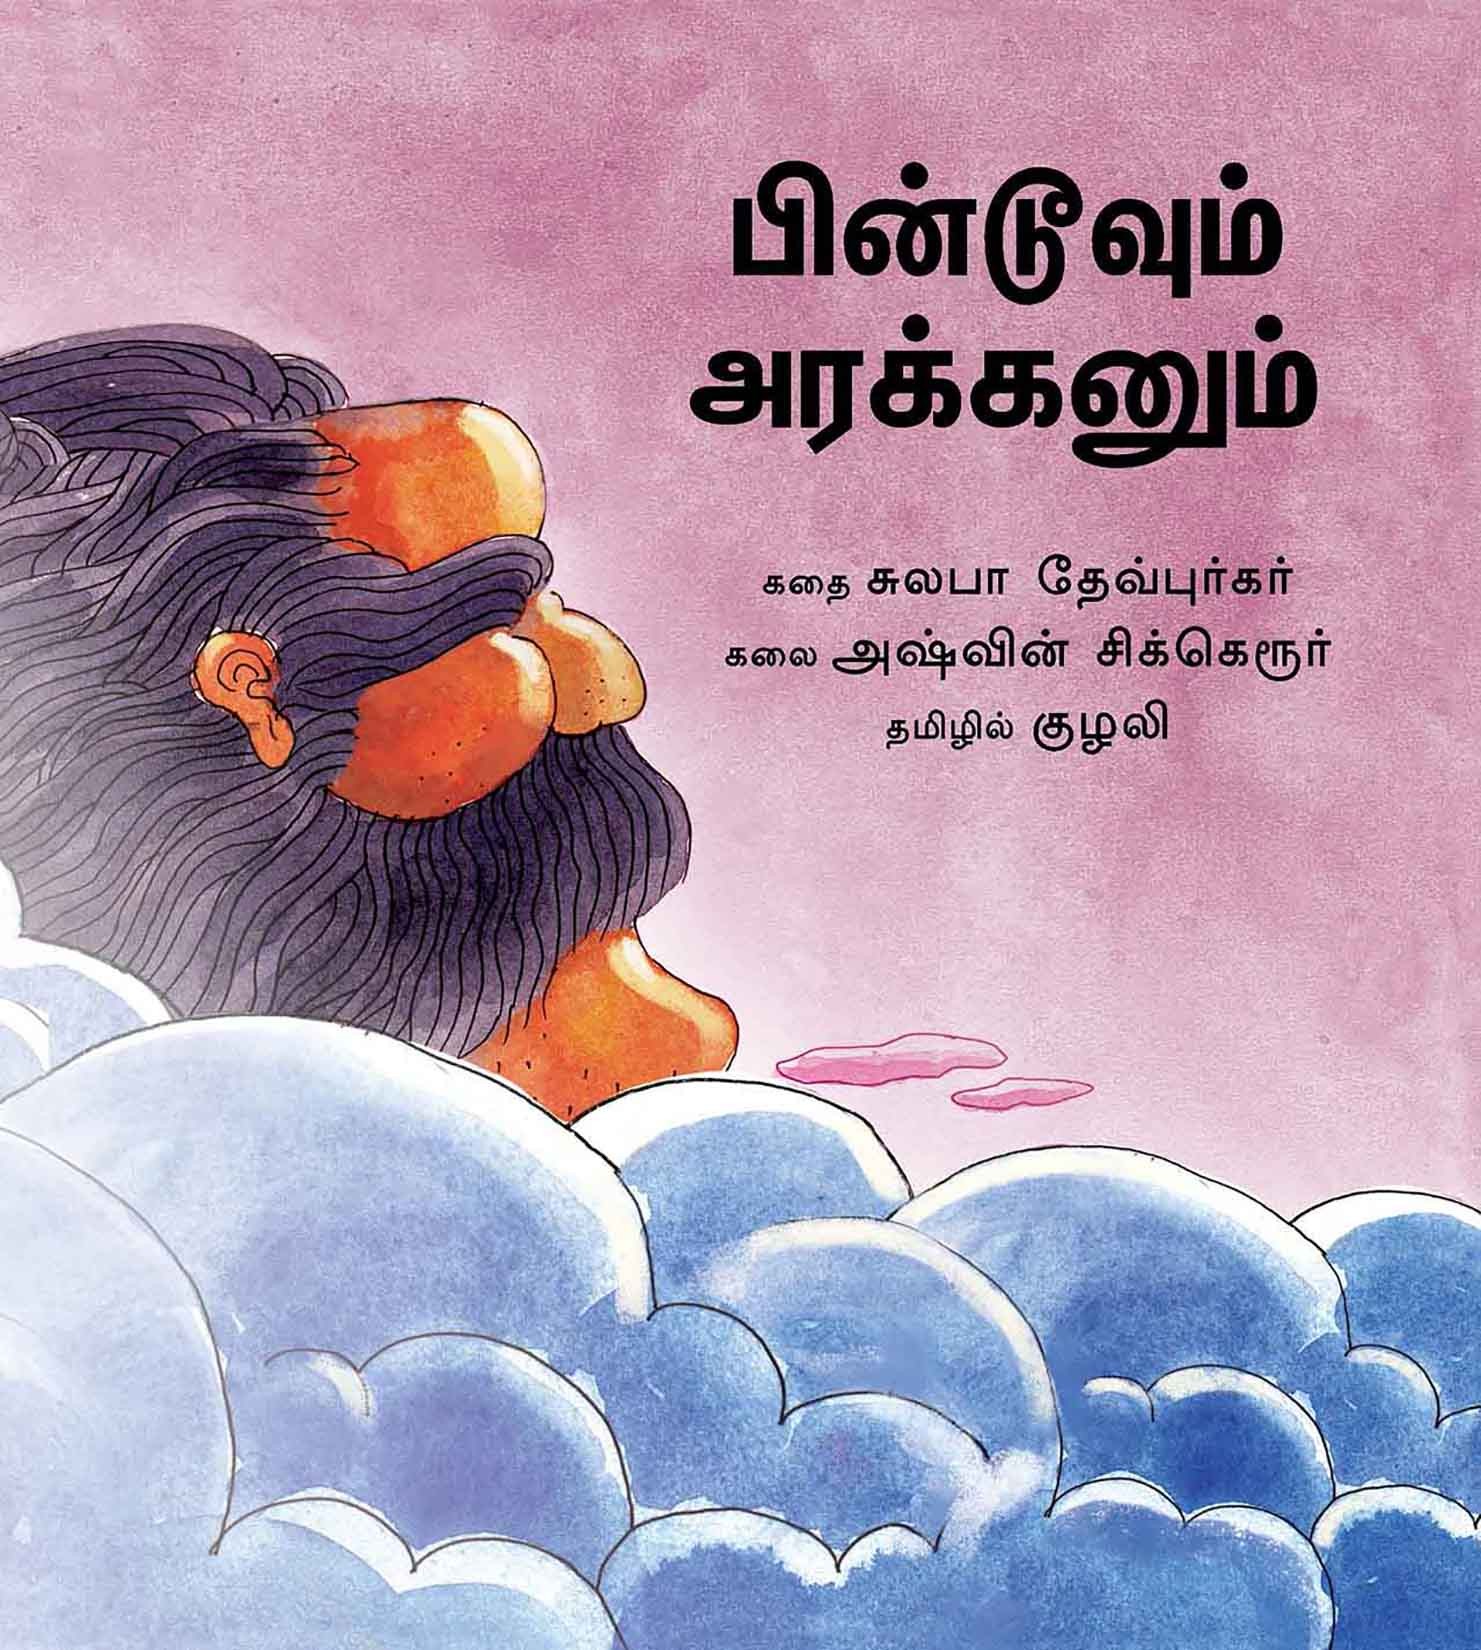 Pintoo And The Giant/Pintoovum Arakkanum (Tamil)